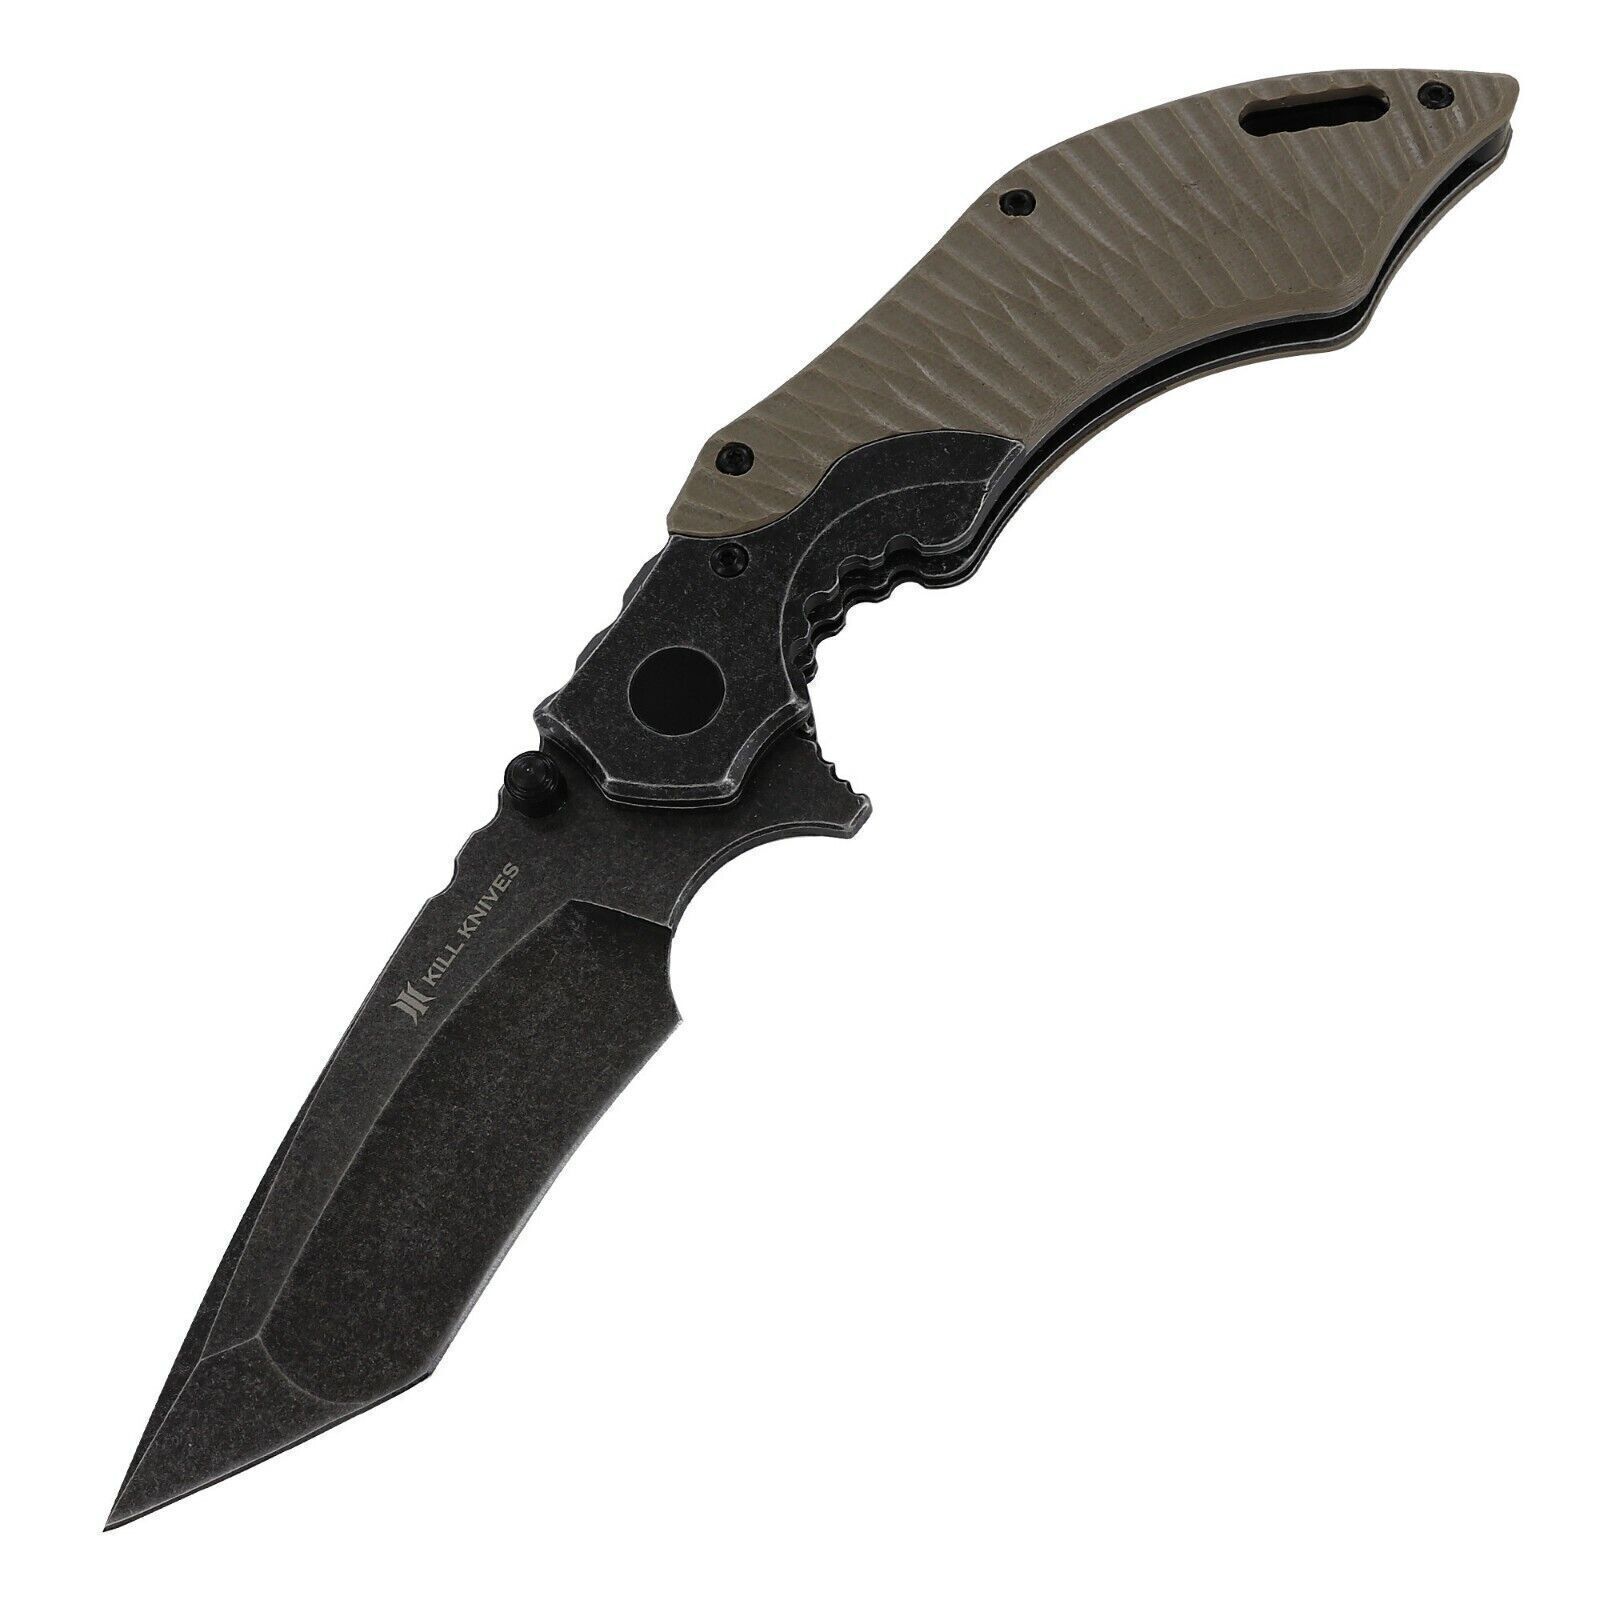 KILL KNIVES™ Bad Company Ball Bearing Assisted Tanto Blade Folding Pocket Knife